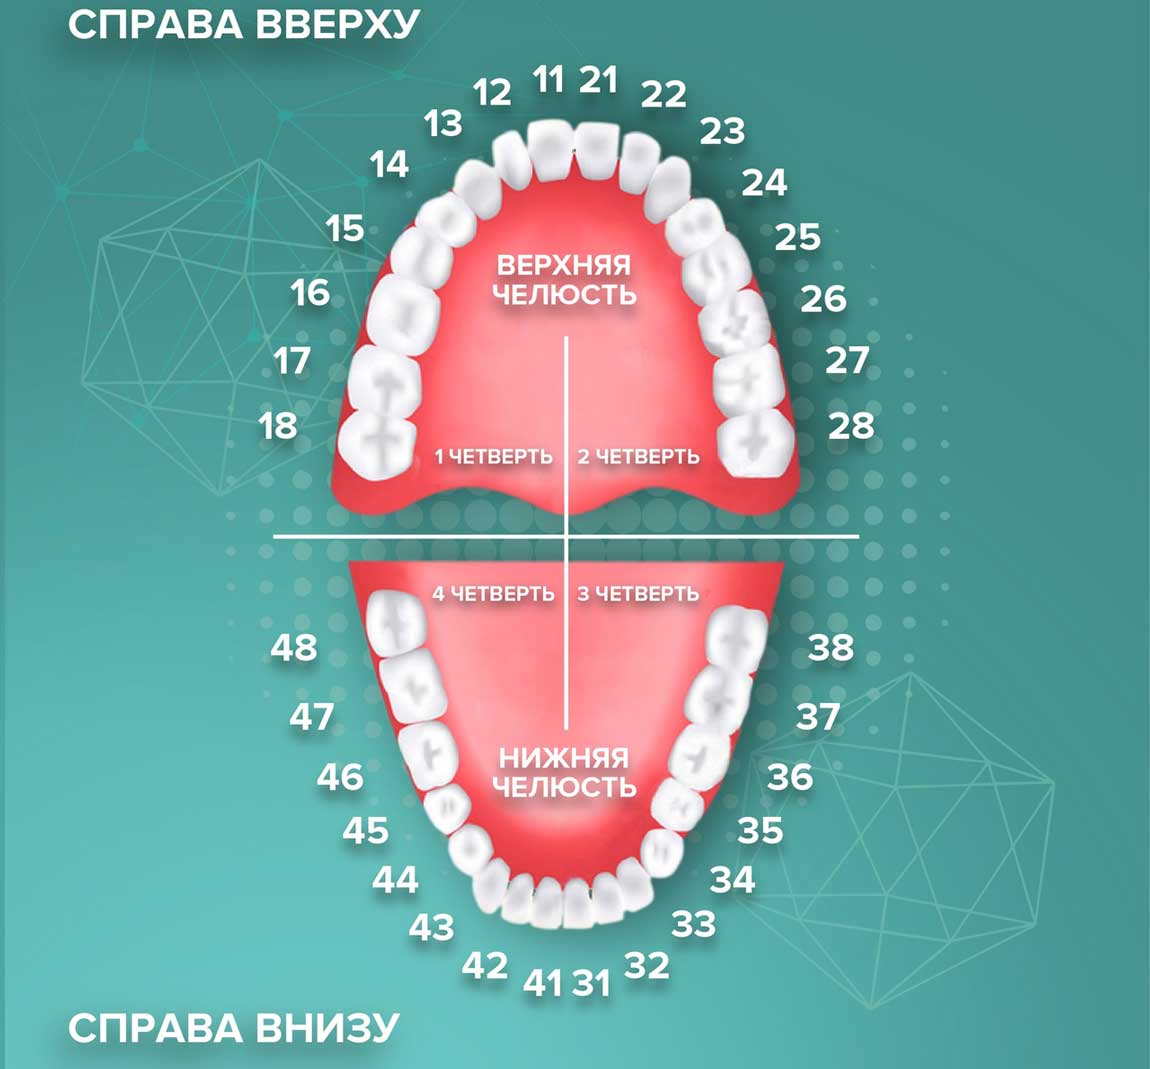 Нумерация зубов верхней челюсти человека